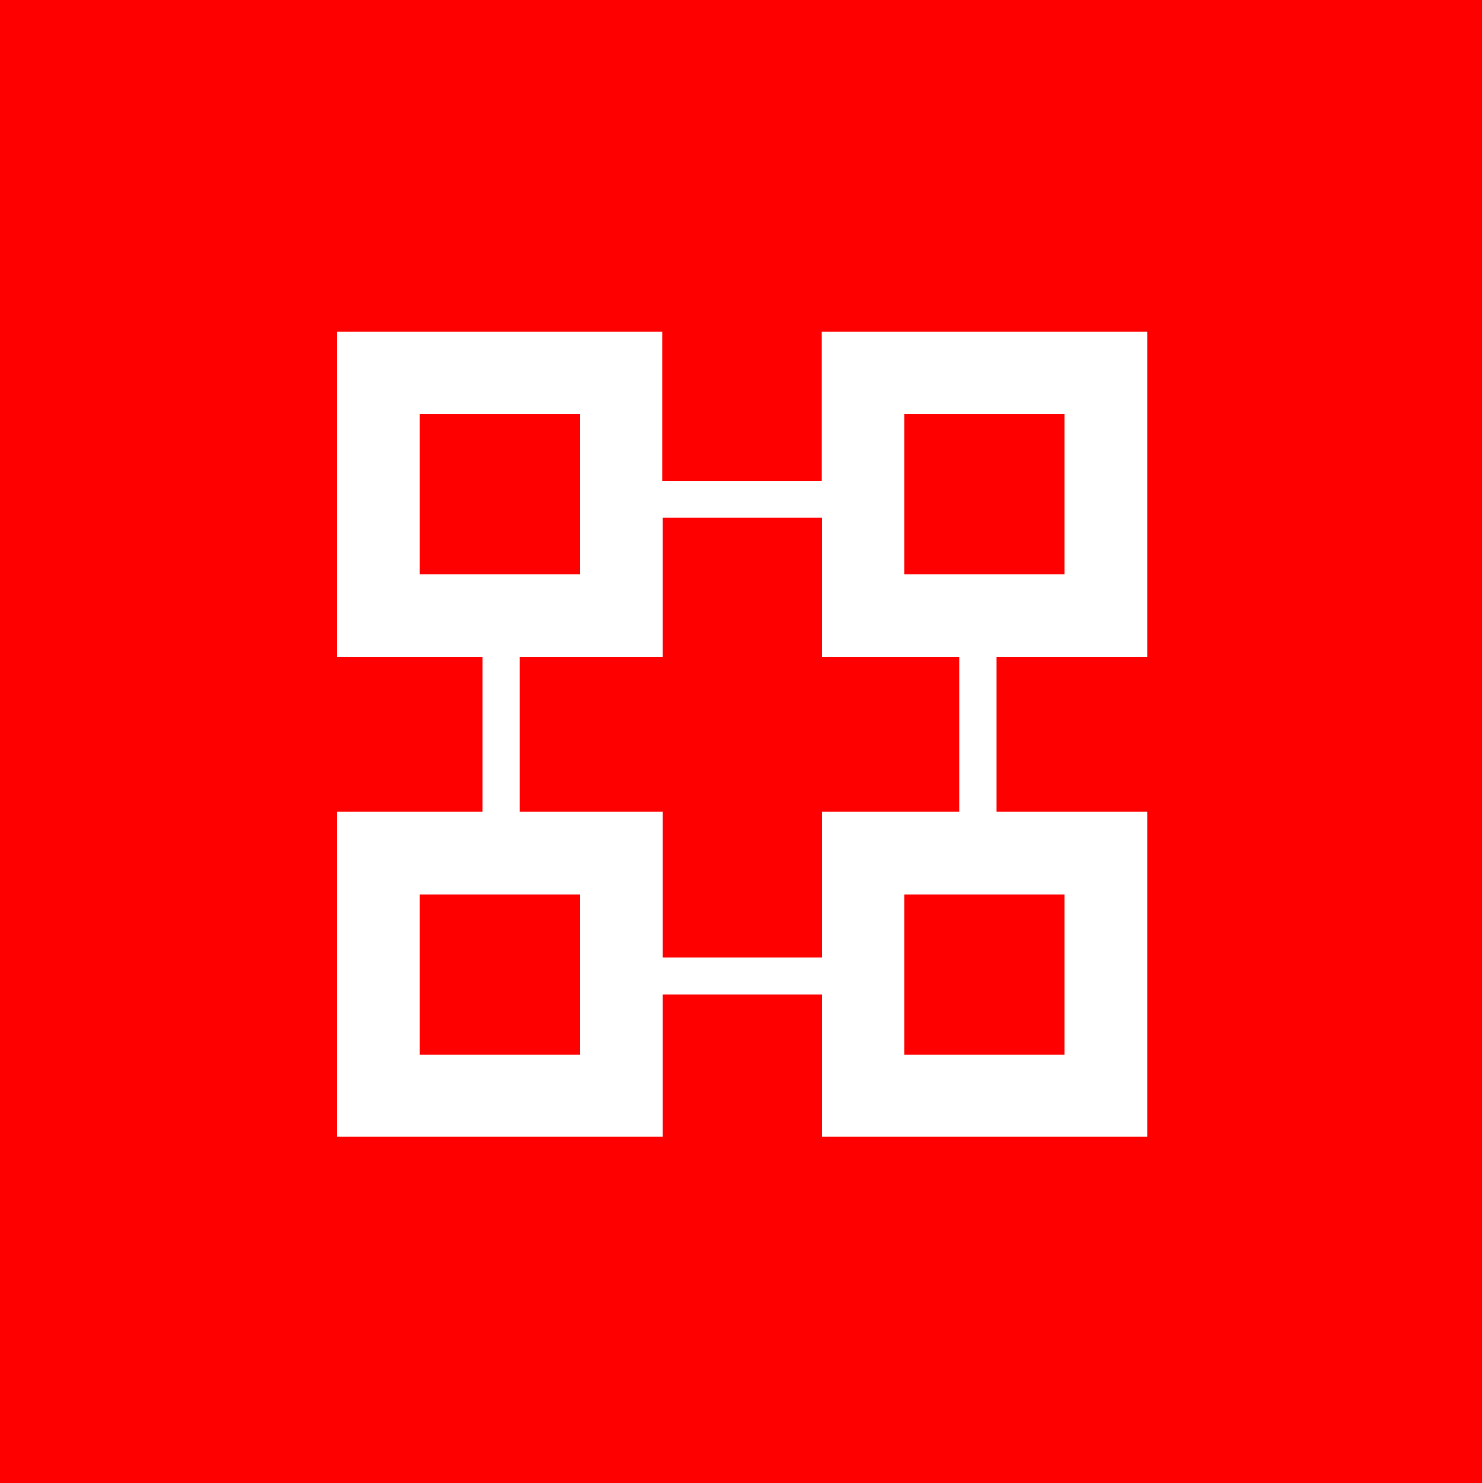 OBORTECH's logo